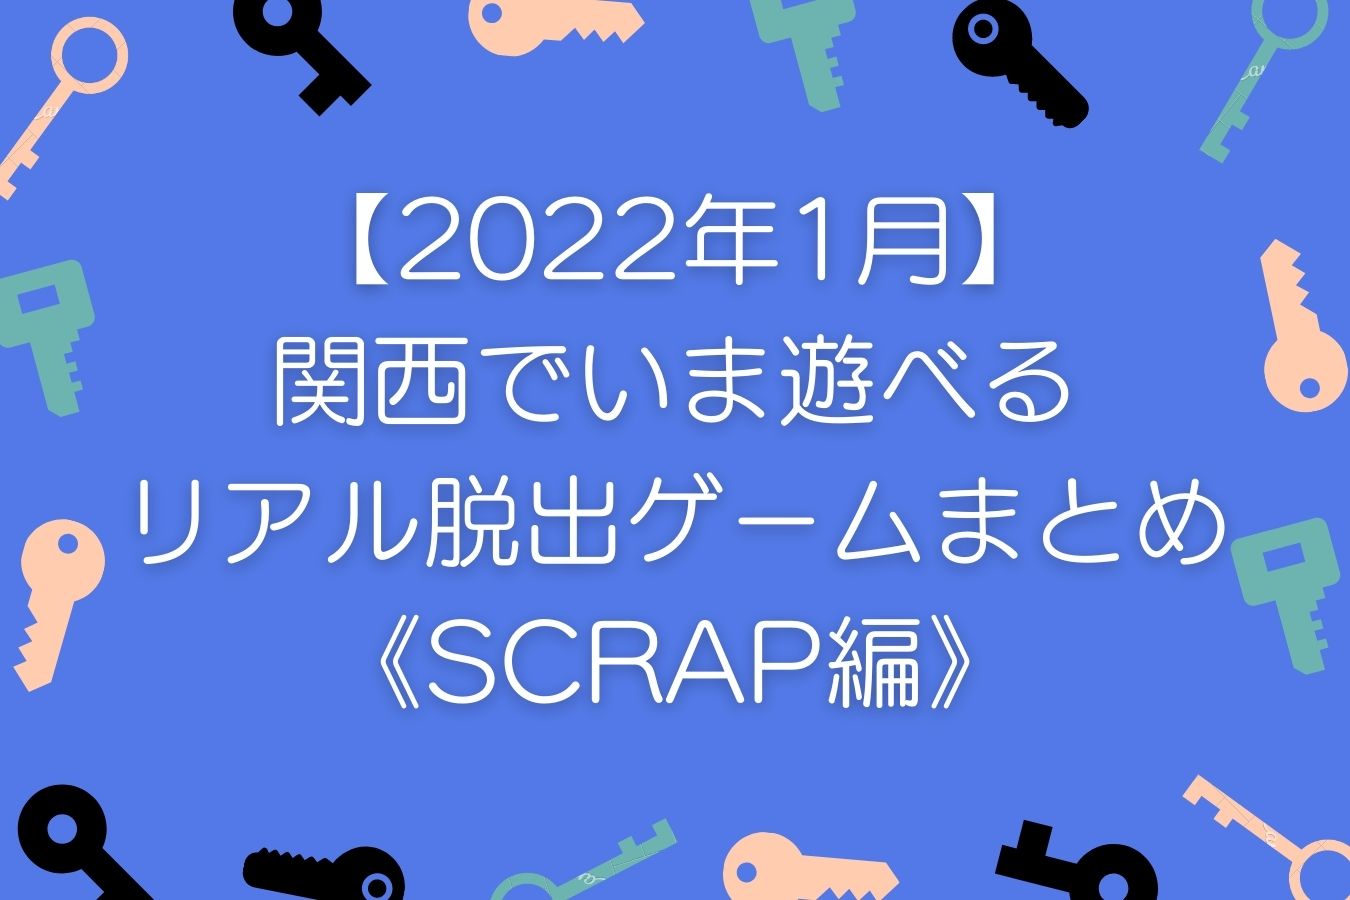 【2022年1月】関西でいま遊べるリアル脱出ゲームまとめ《SCRAP編》